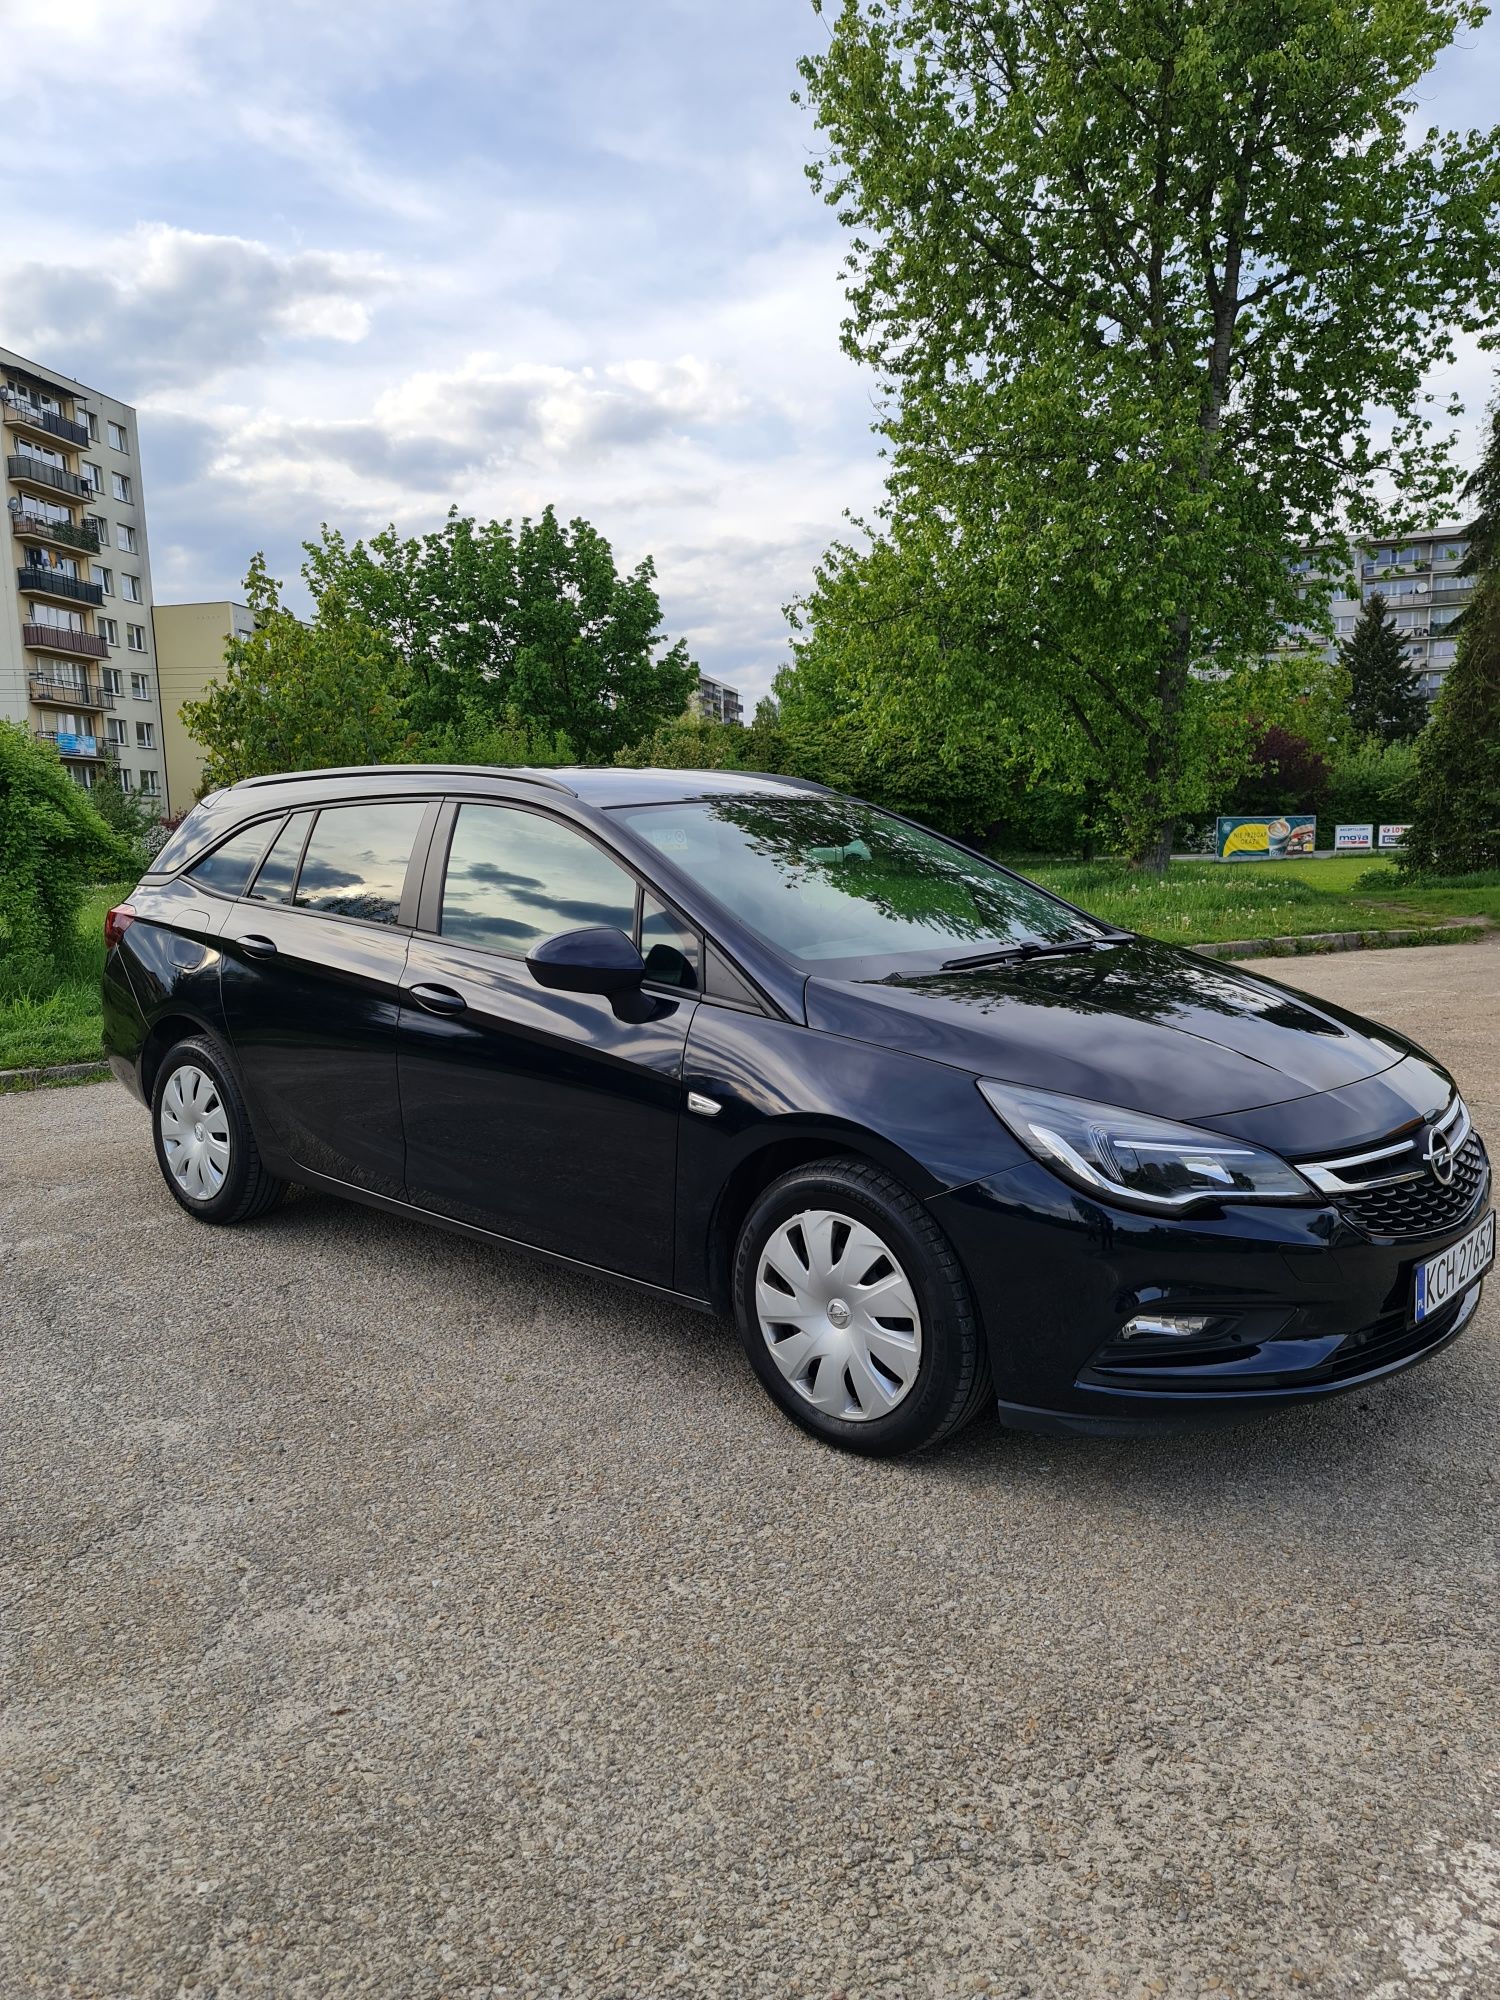 Opel Astra 2018 Sport tourner możliwa zamiana